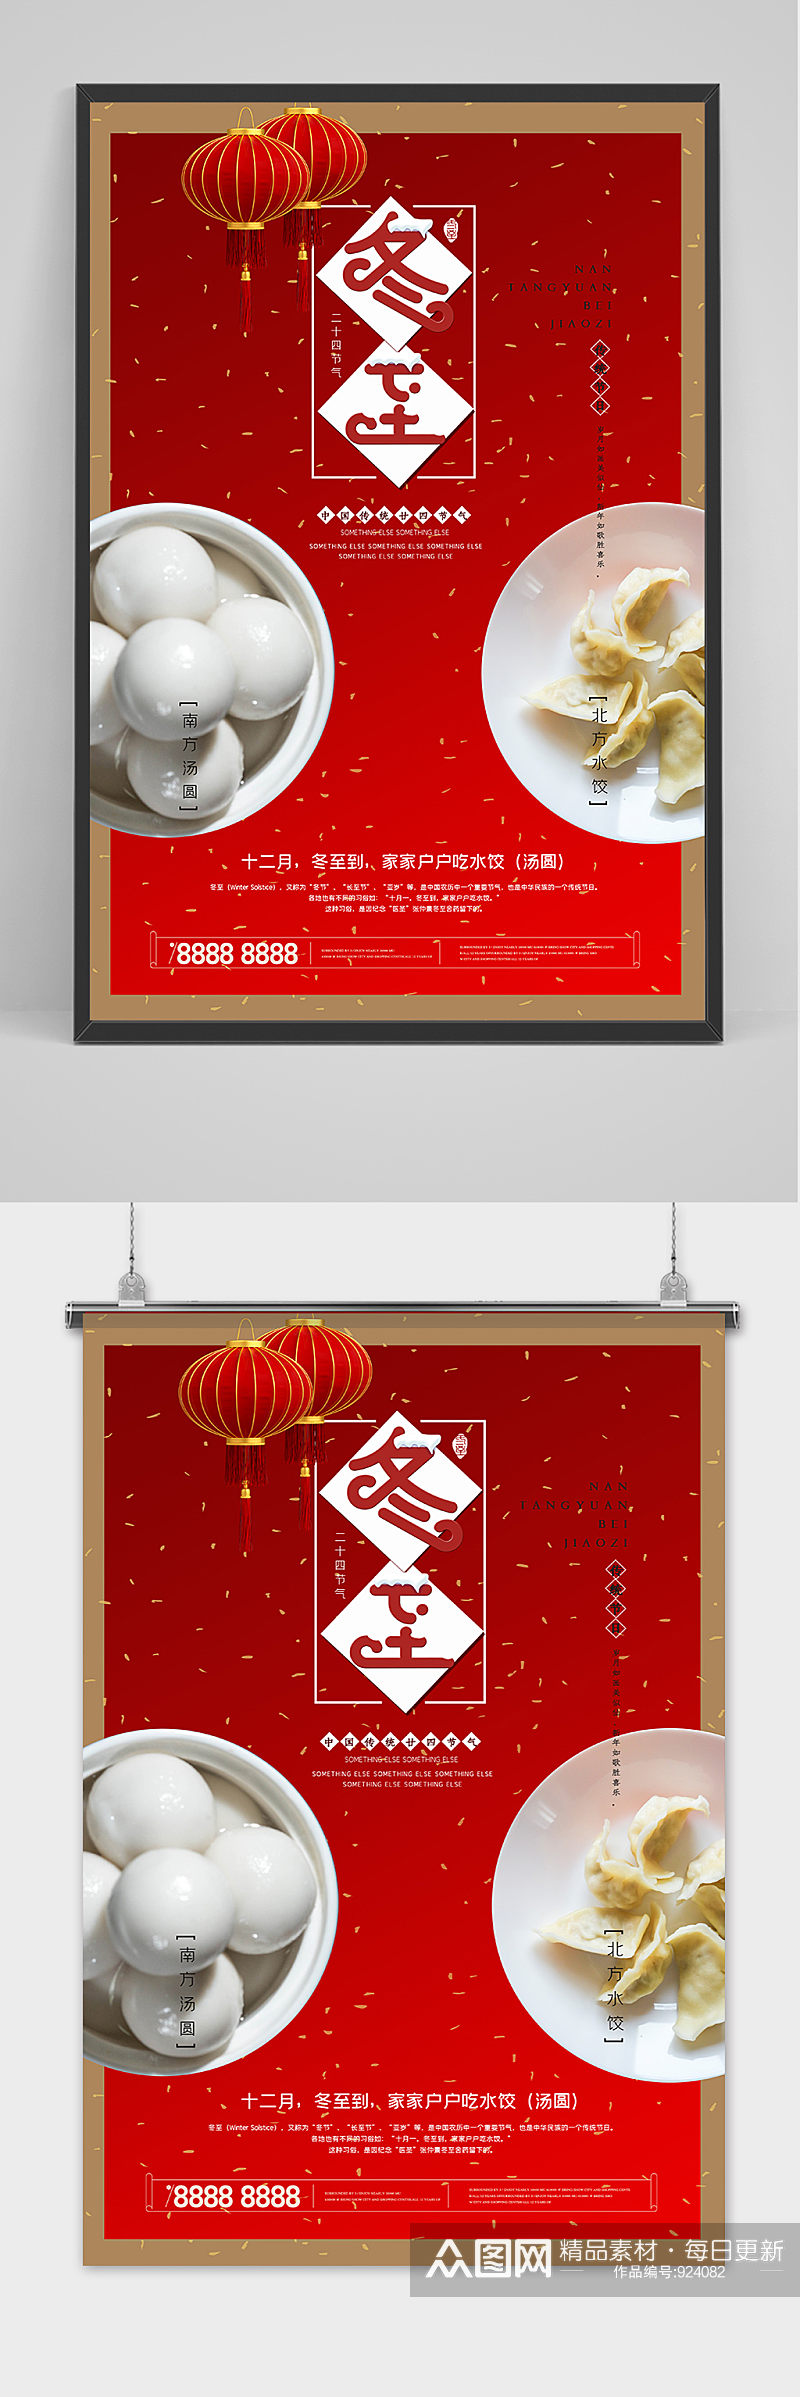 红色喜庆创意冬至习俗海报素材